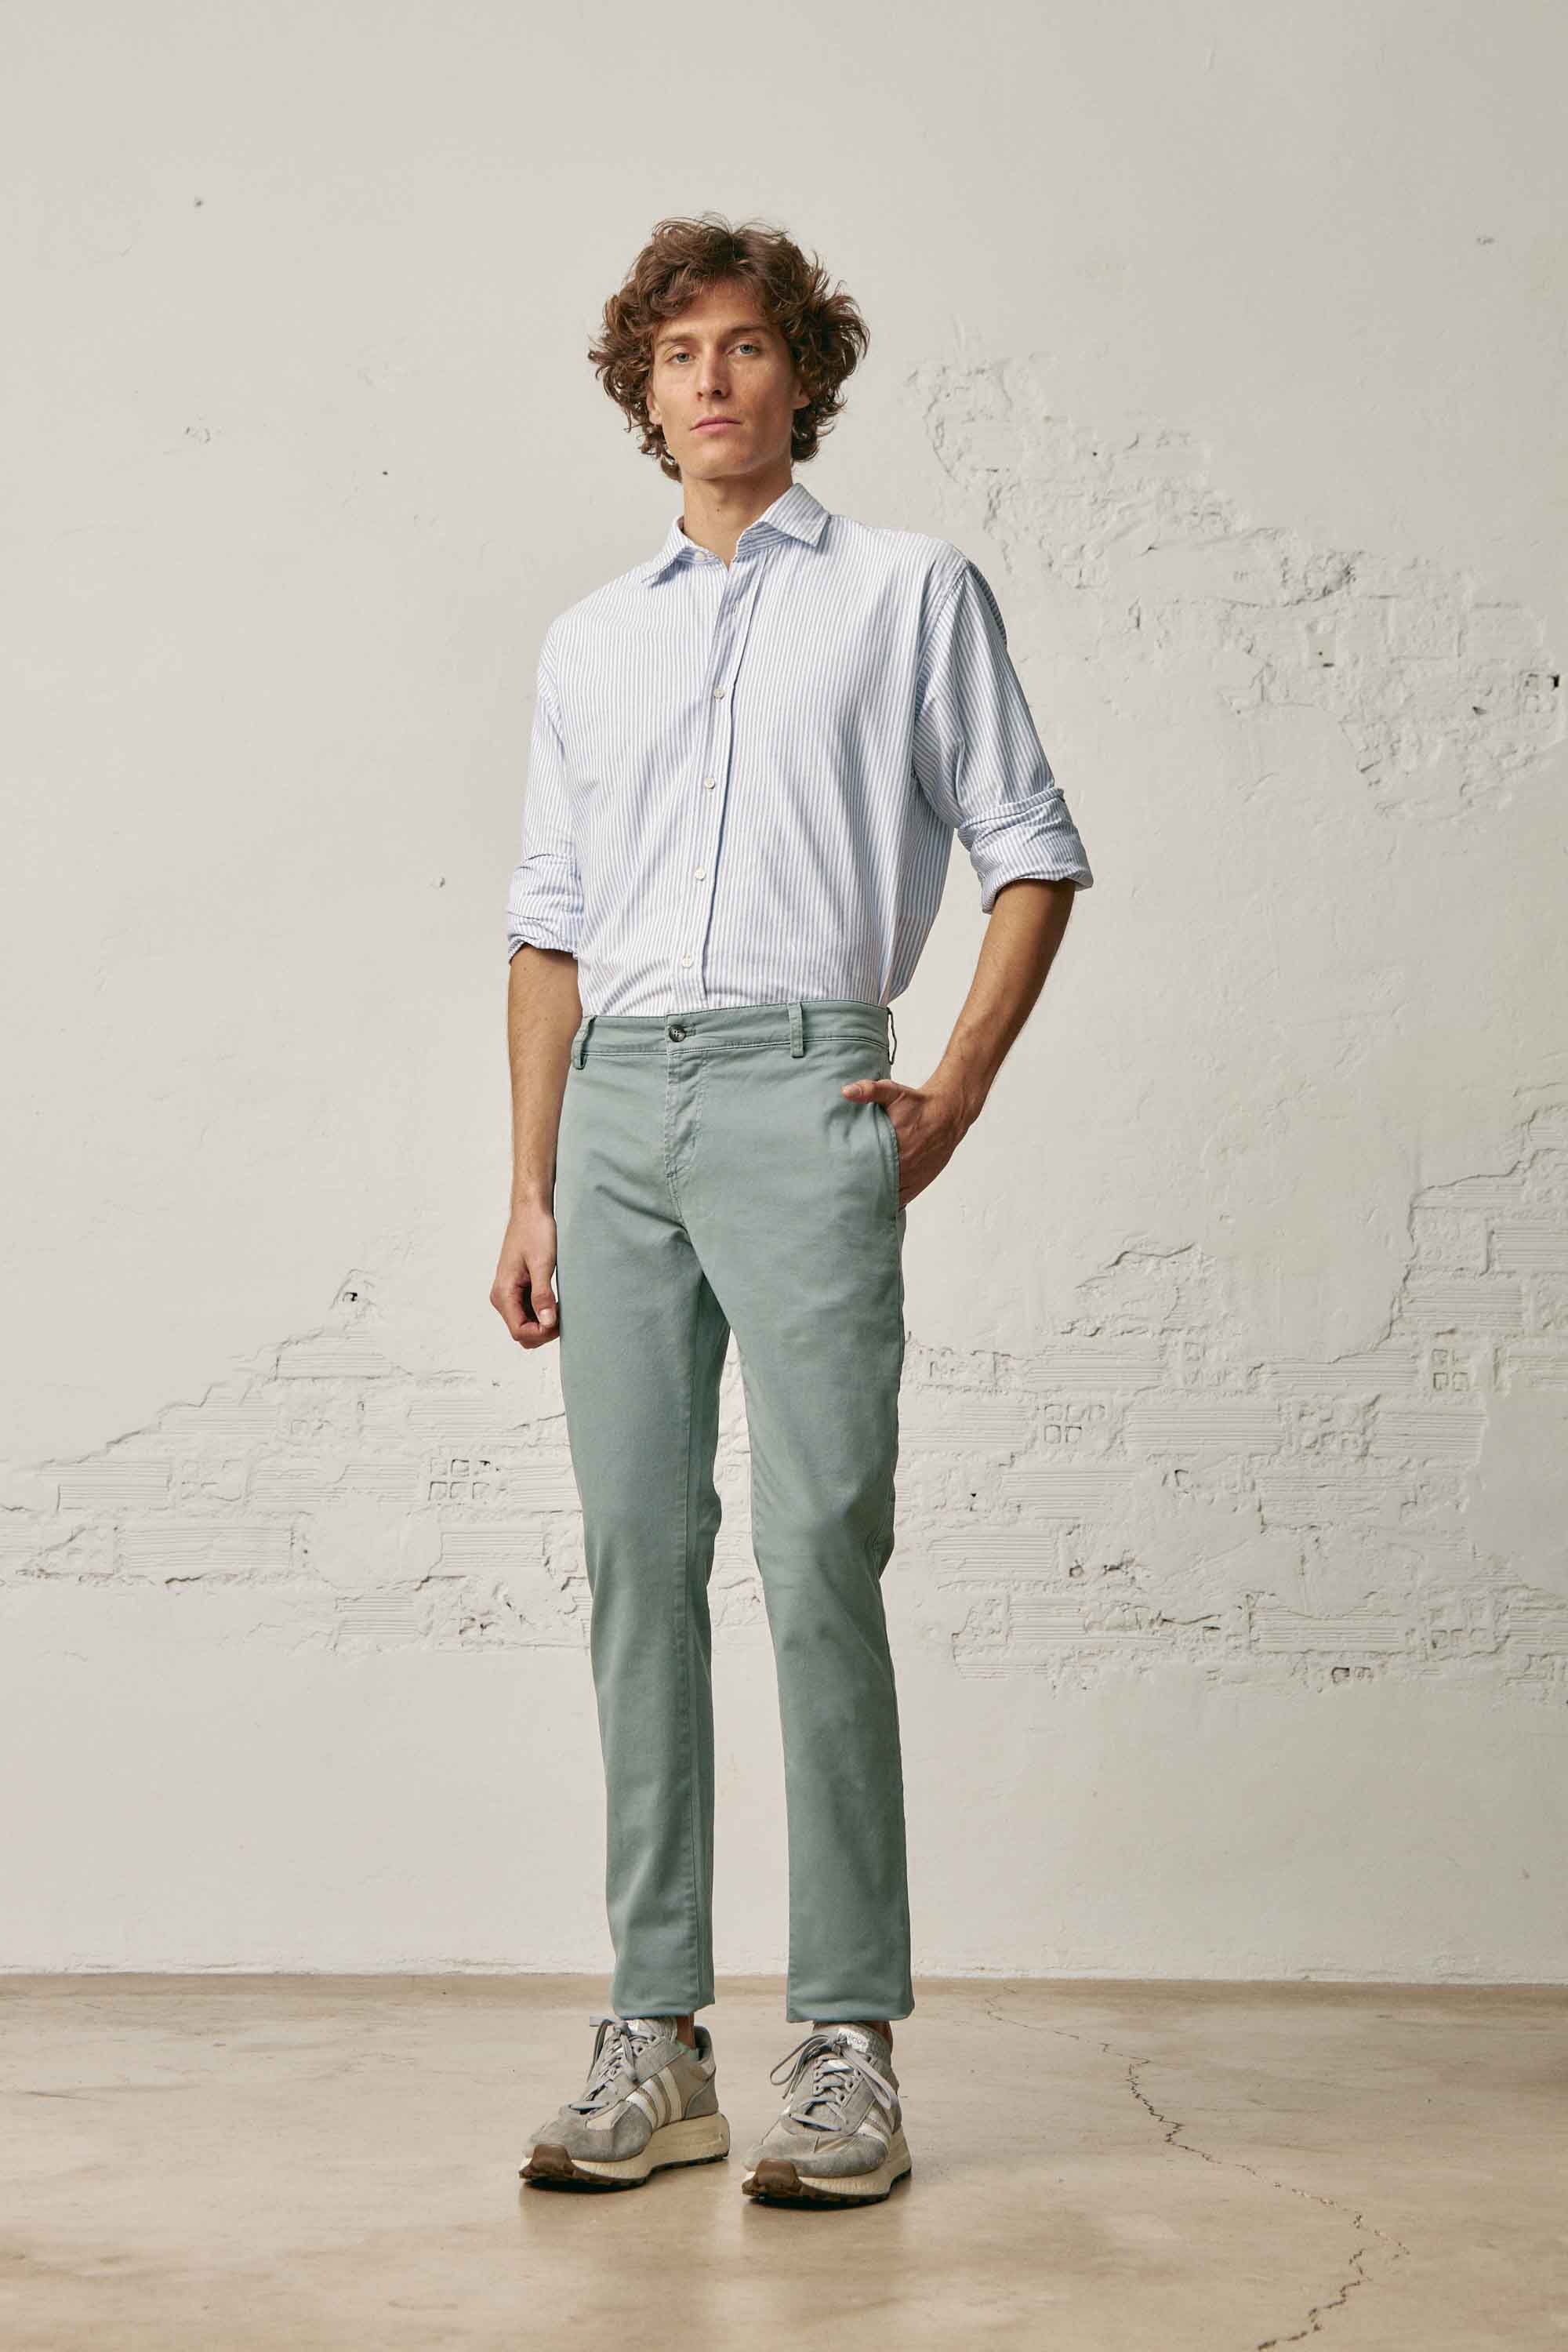 Camisa de Algodón - Oxford Rayas Azul y Blancas